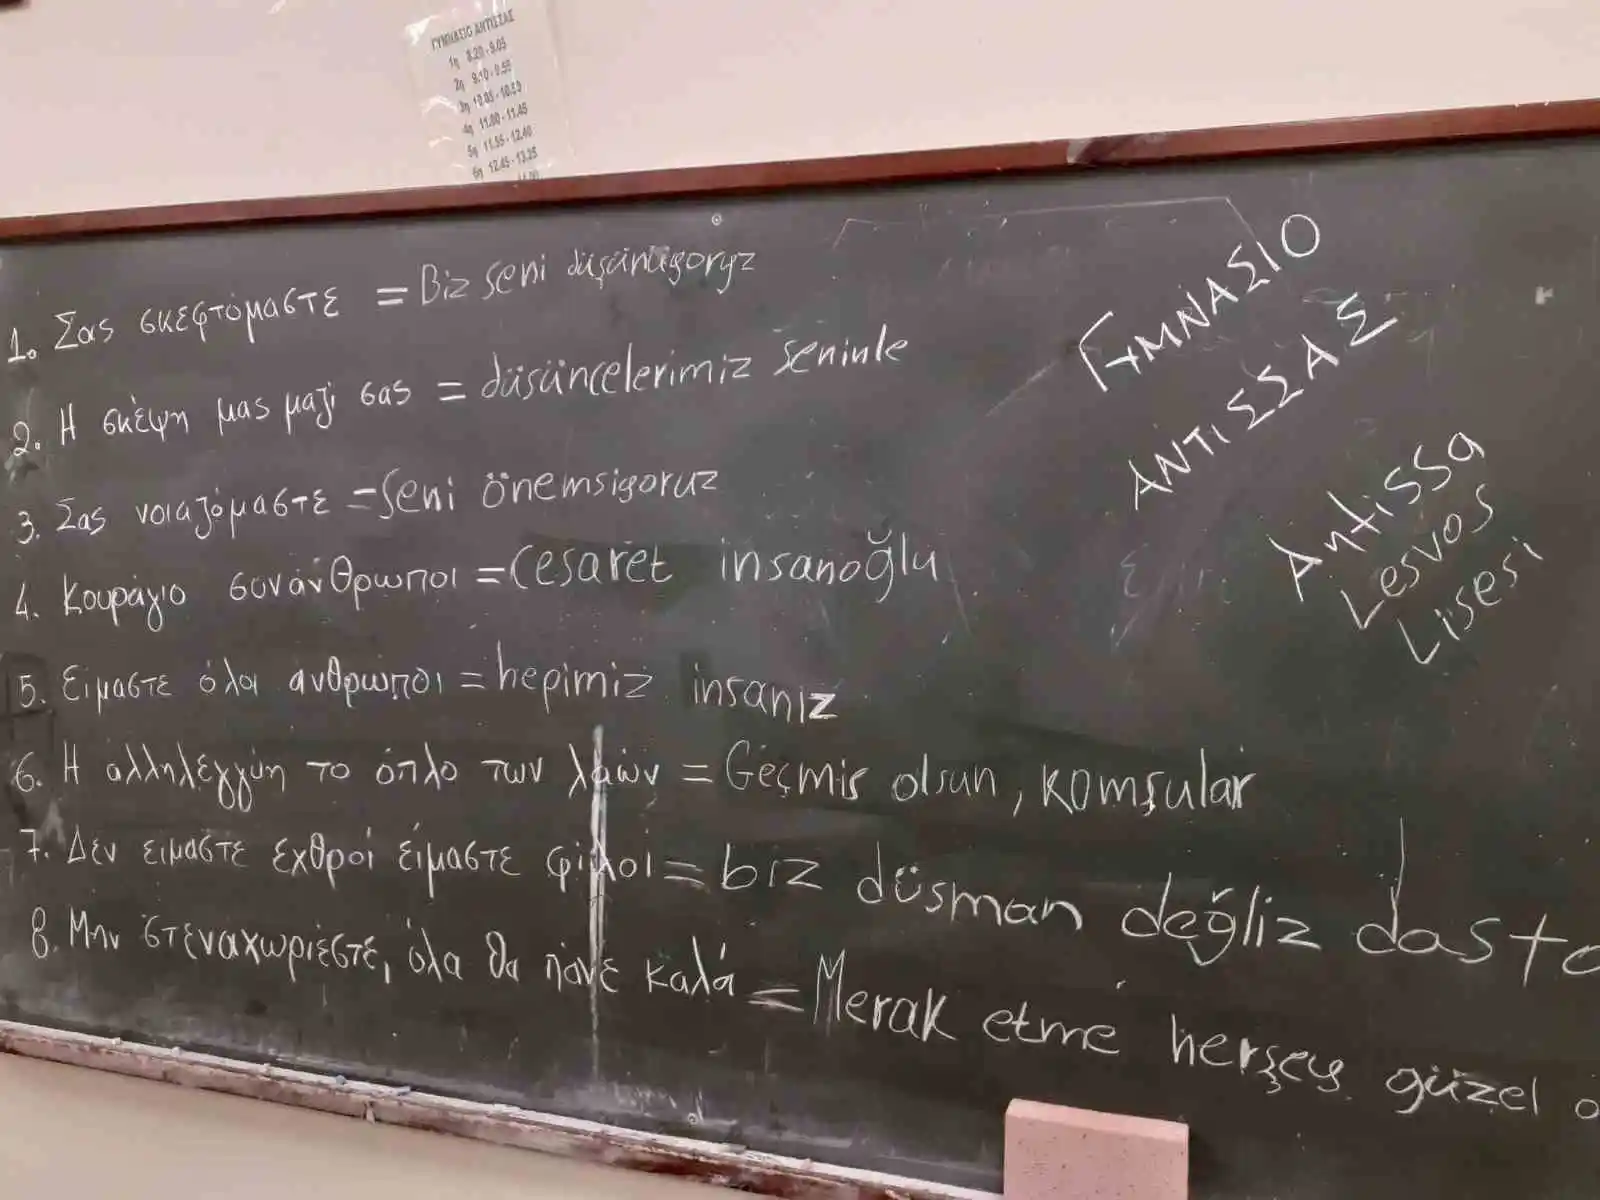 Yunan lise öğrencilerinden Türkiye’ye duygu dolu mesajlar: “Geçmiş olsun komşular”
